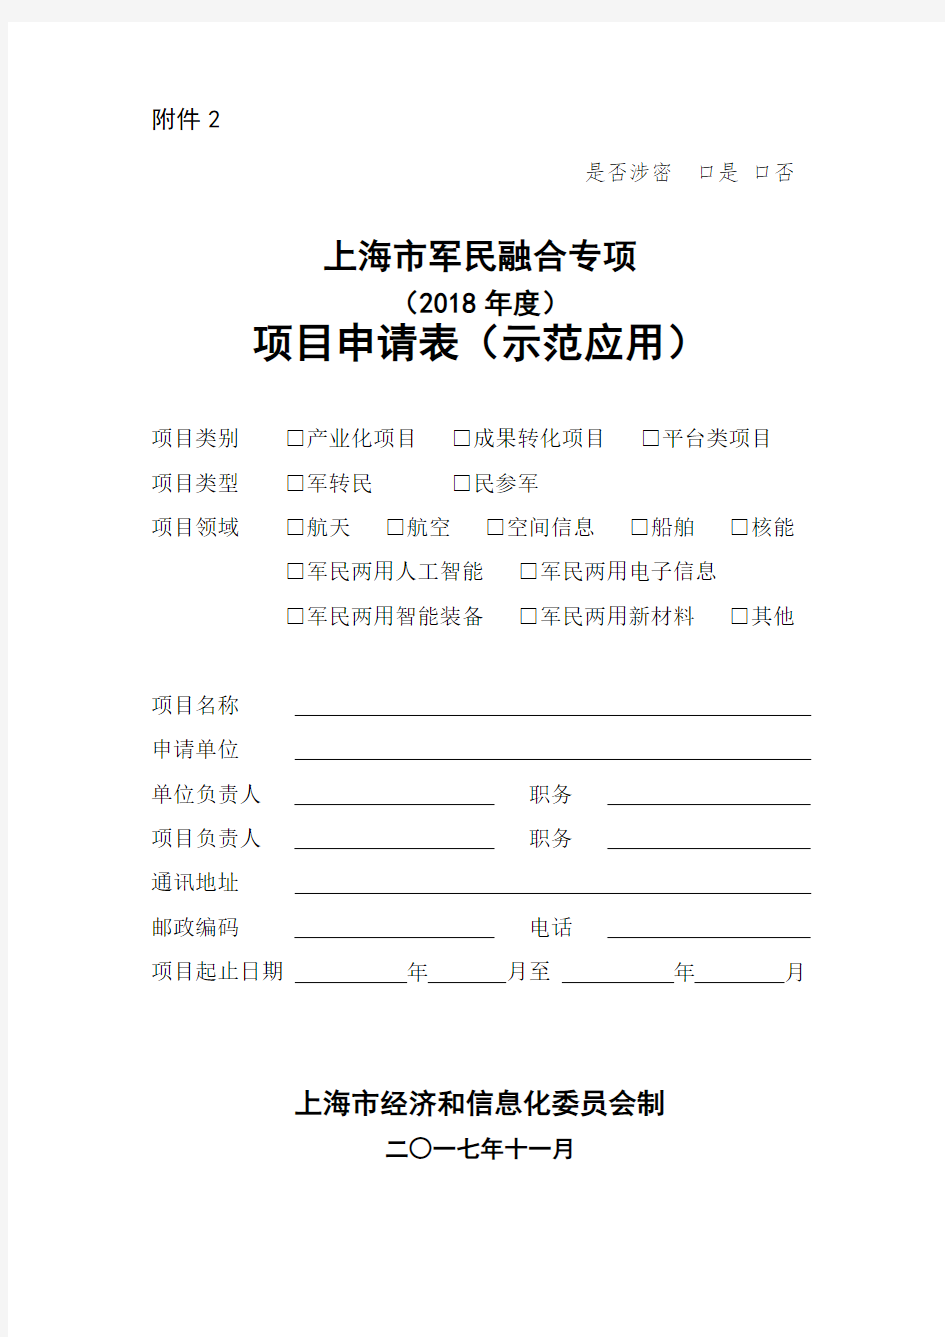 上海市军民融合专项(2018年度)项目申请表(示范应用)